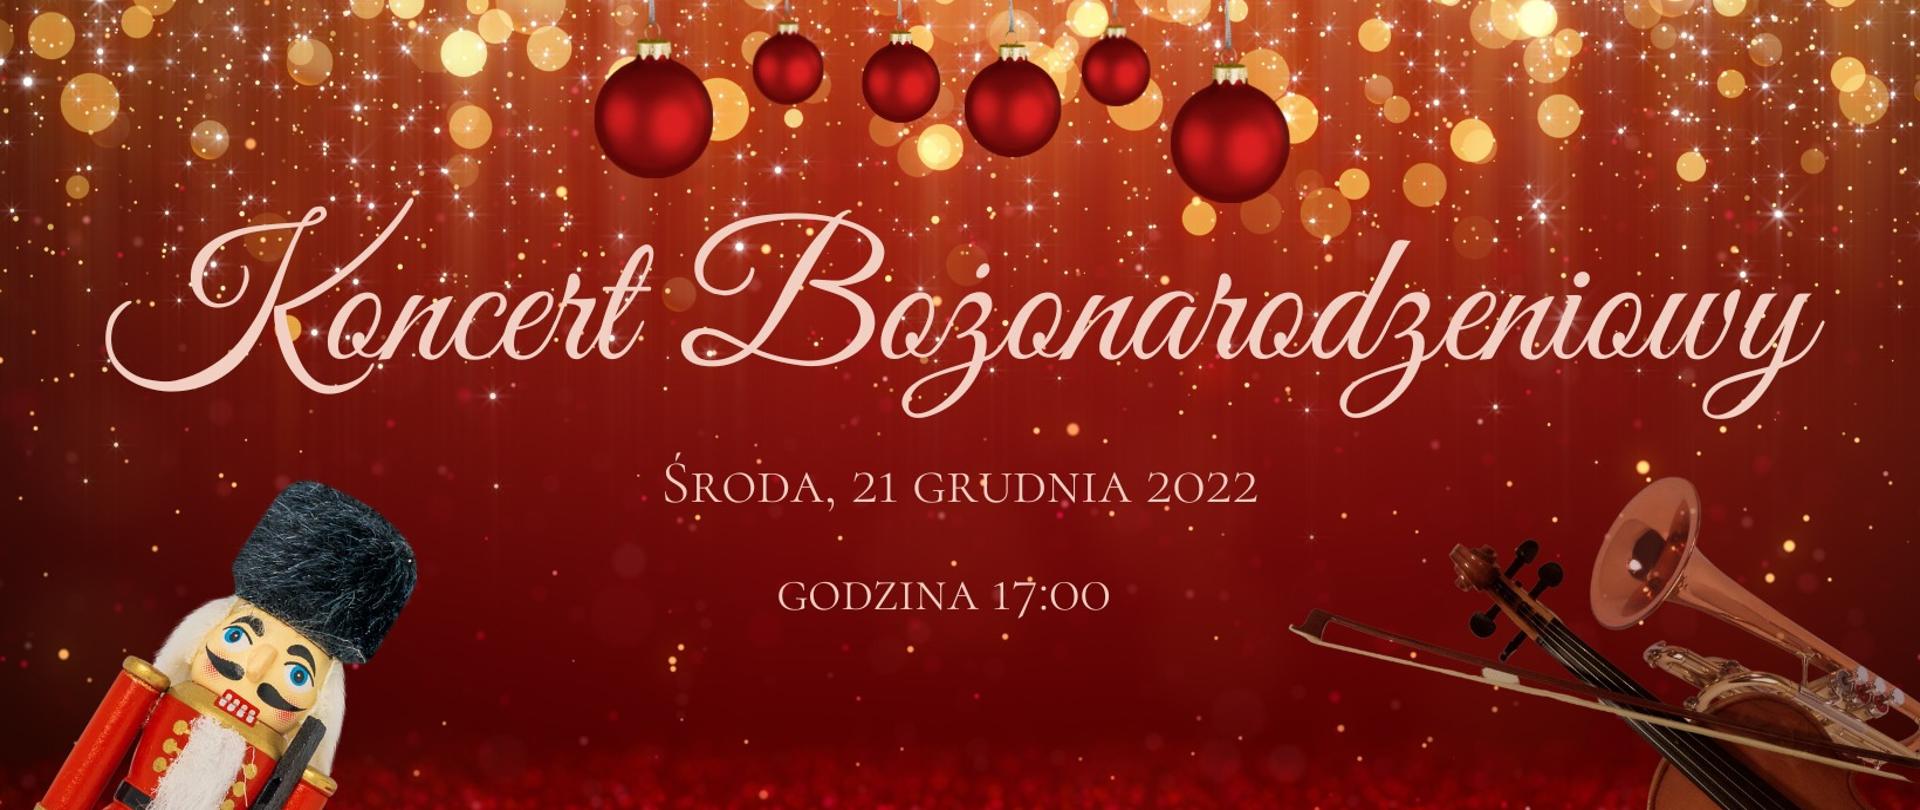 Grafika na czerwonym tle dziadek do orzechów w lewym rogu, data 21 grudnia 2022 środa godzina 17.00